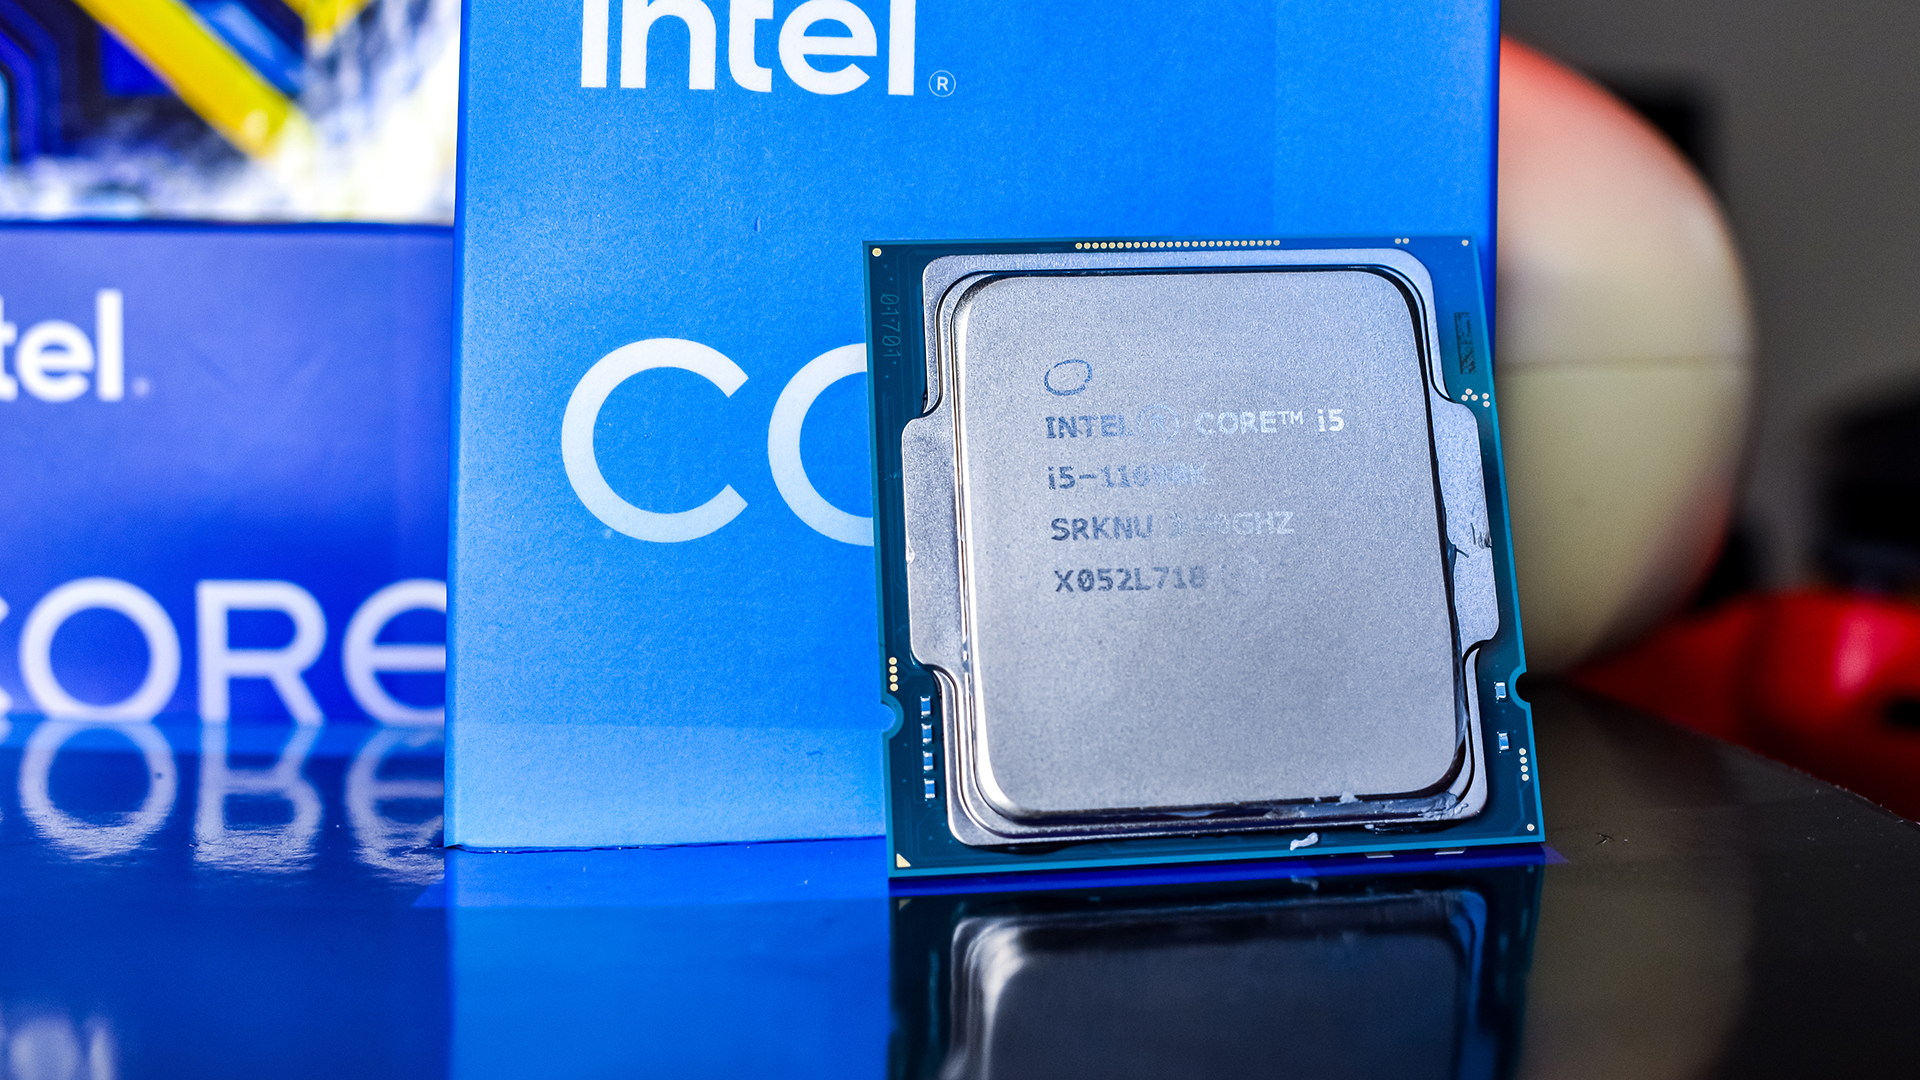 Интел обзор. Intel Core i5-11600k. I5 11600. Intel Core i5-11600kf lga1200, 6 x 3900 МГЦ. Обои Intel Core i5.